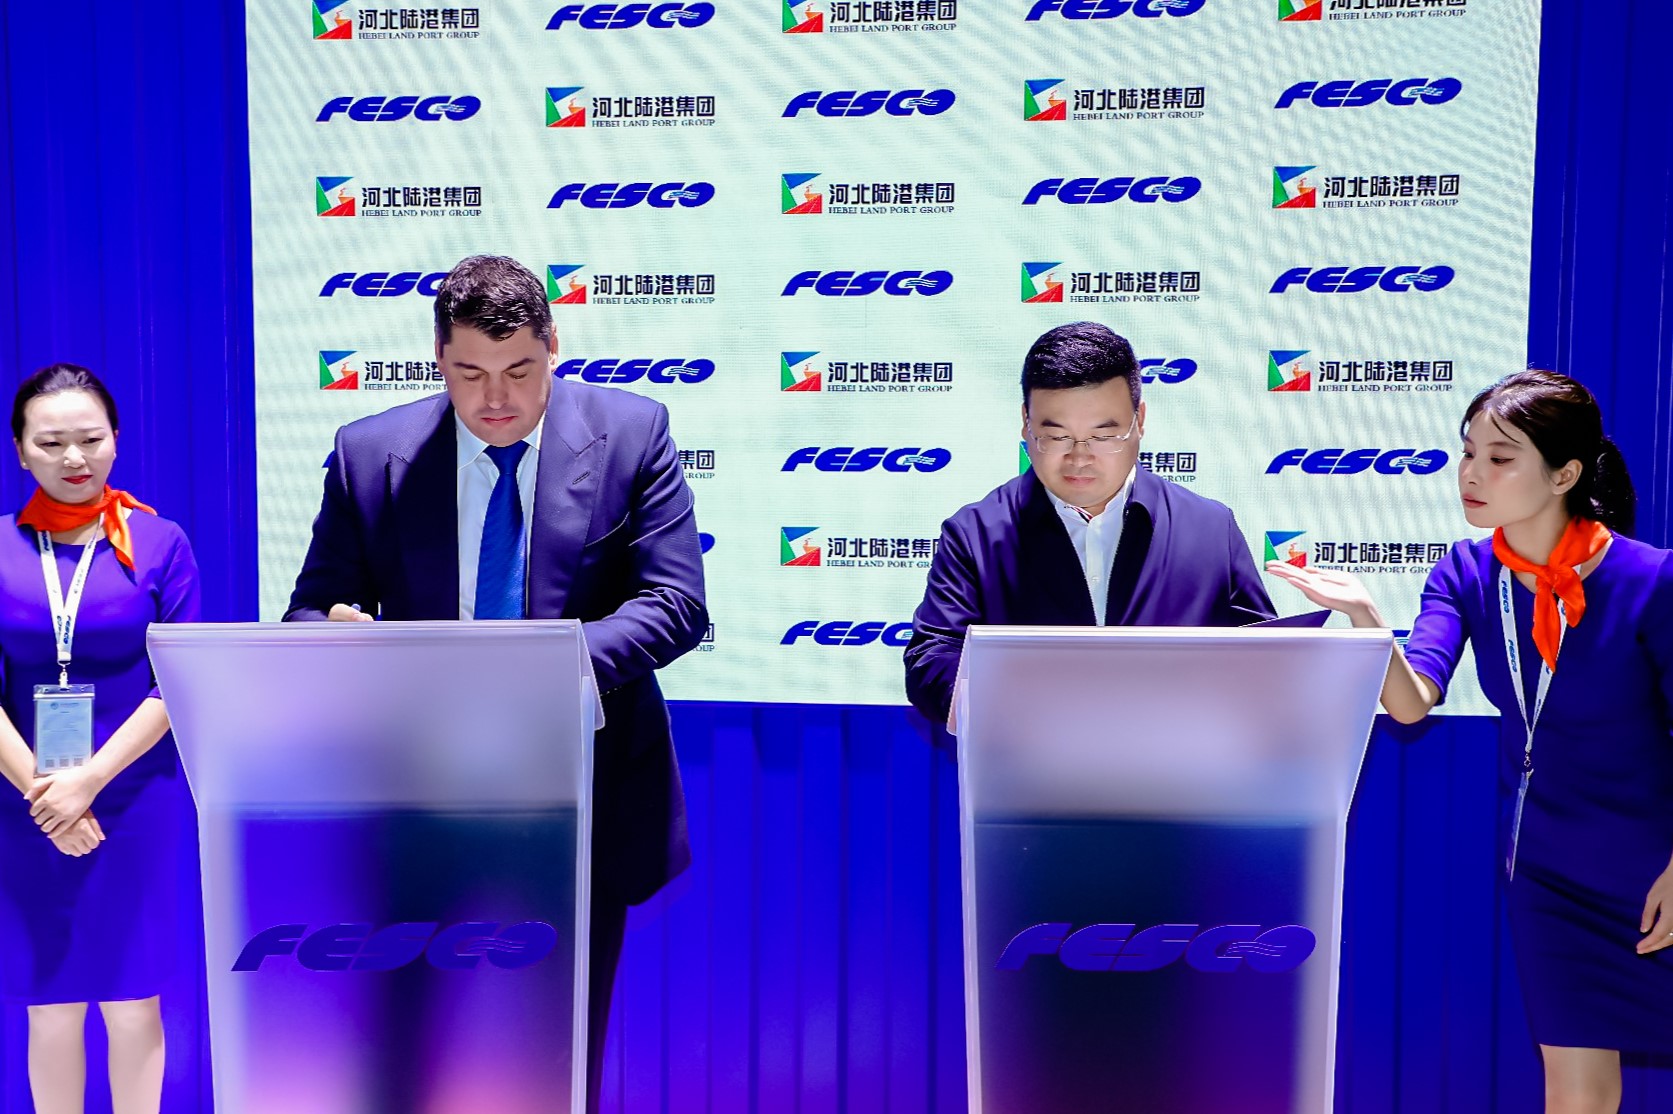 FESCO и Hebei Land Port Group будут сотрудничать в транспортной и инженерно-строительной сферах